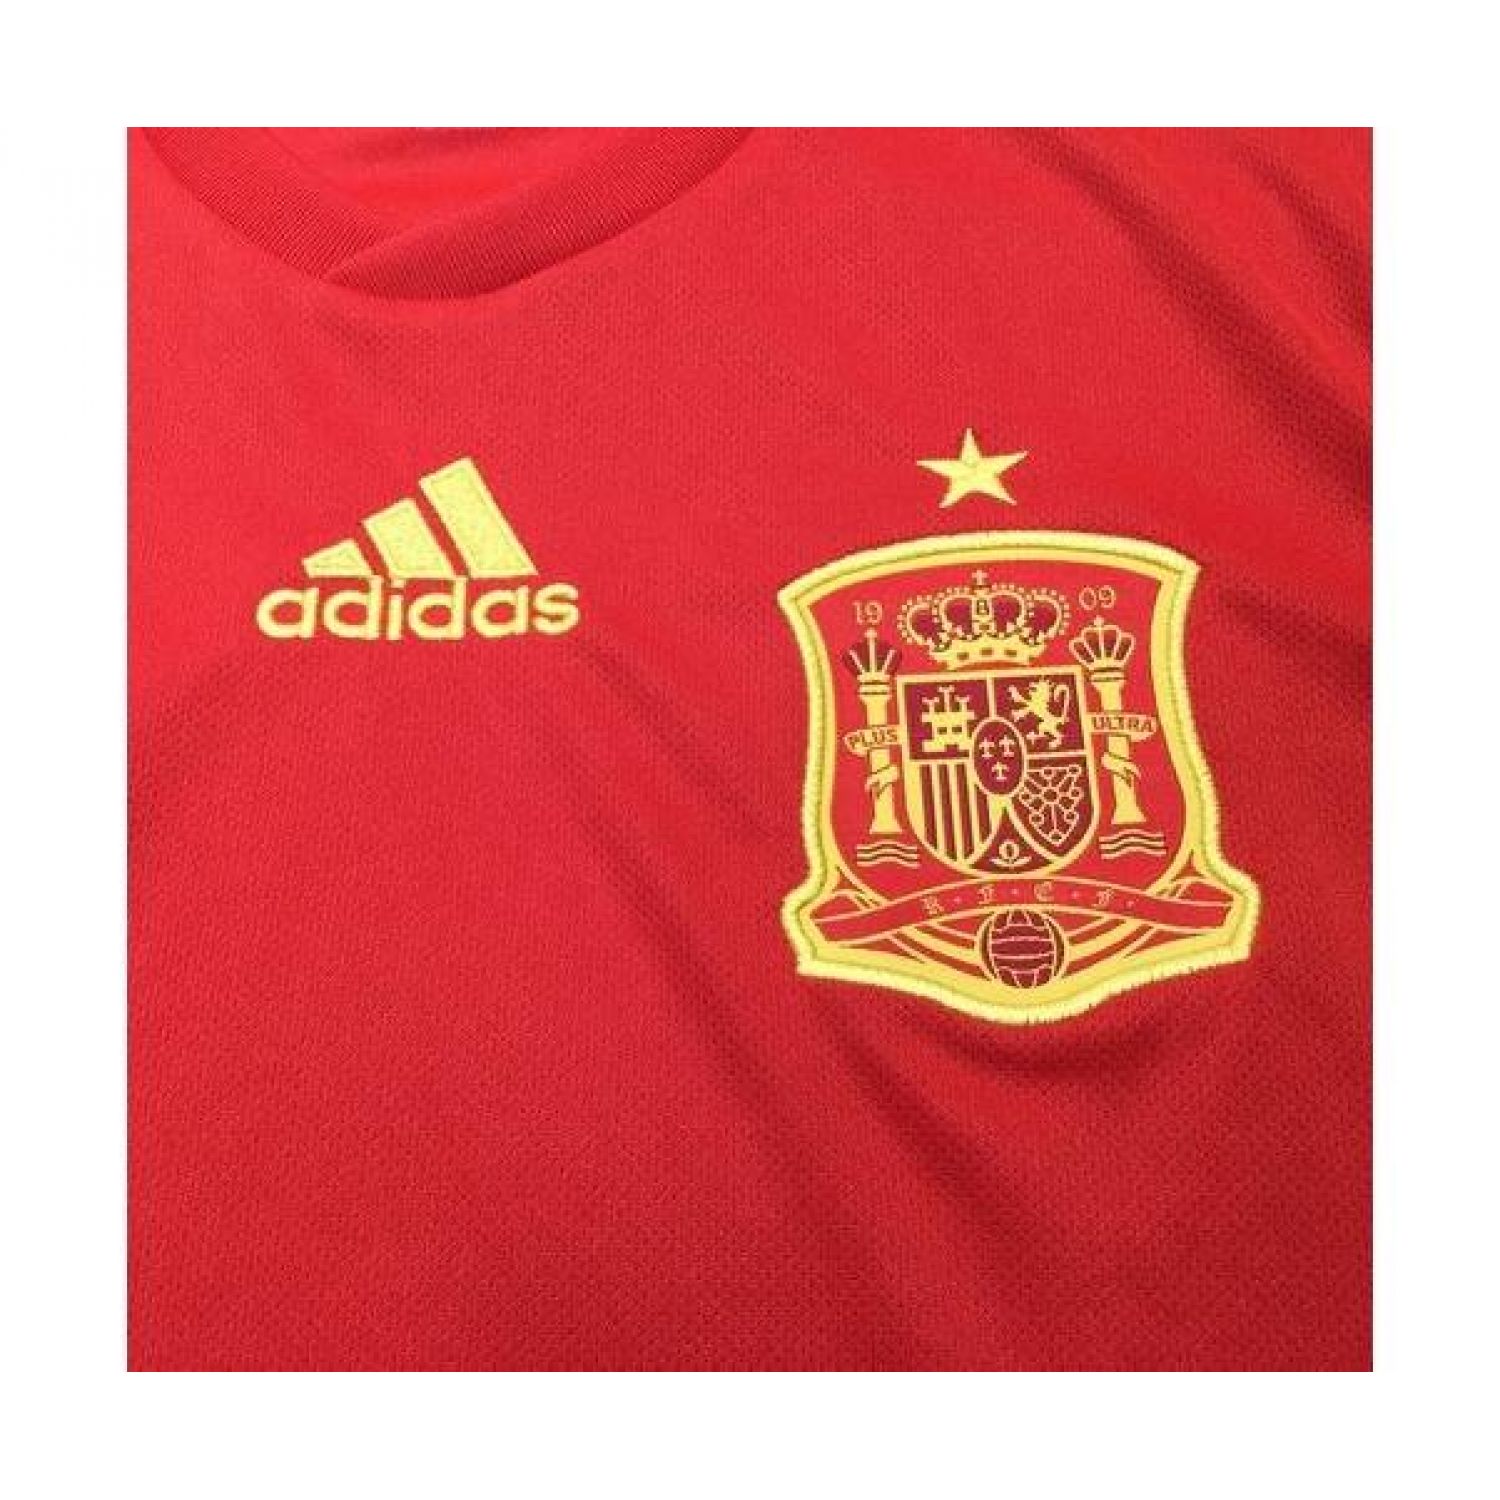 adidas (アディダス) サッカーユニフォーム レッド スペイン代表2018